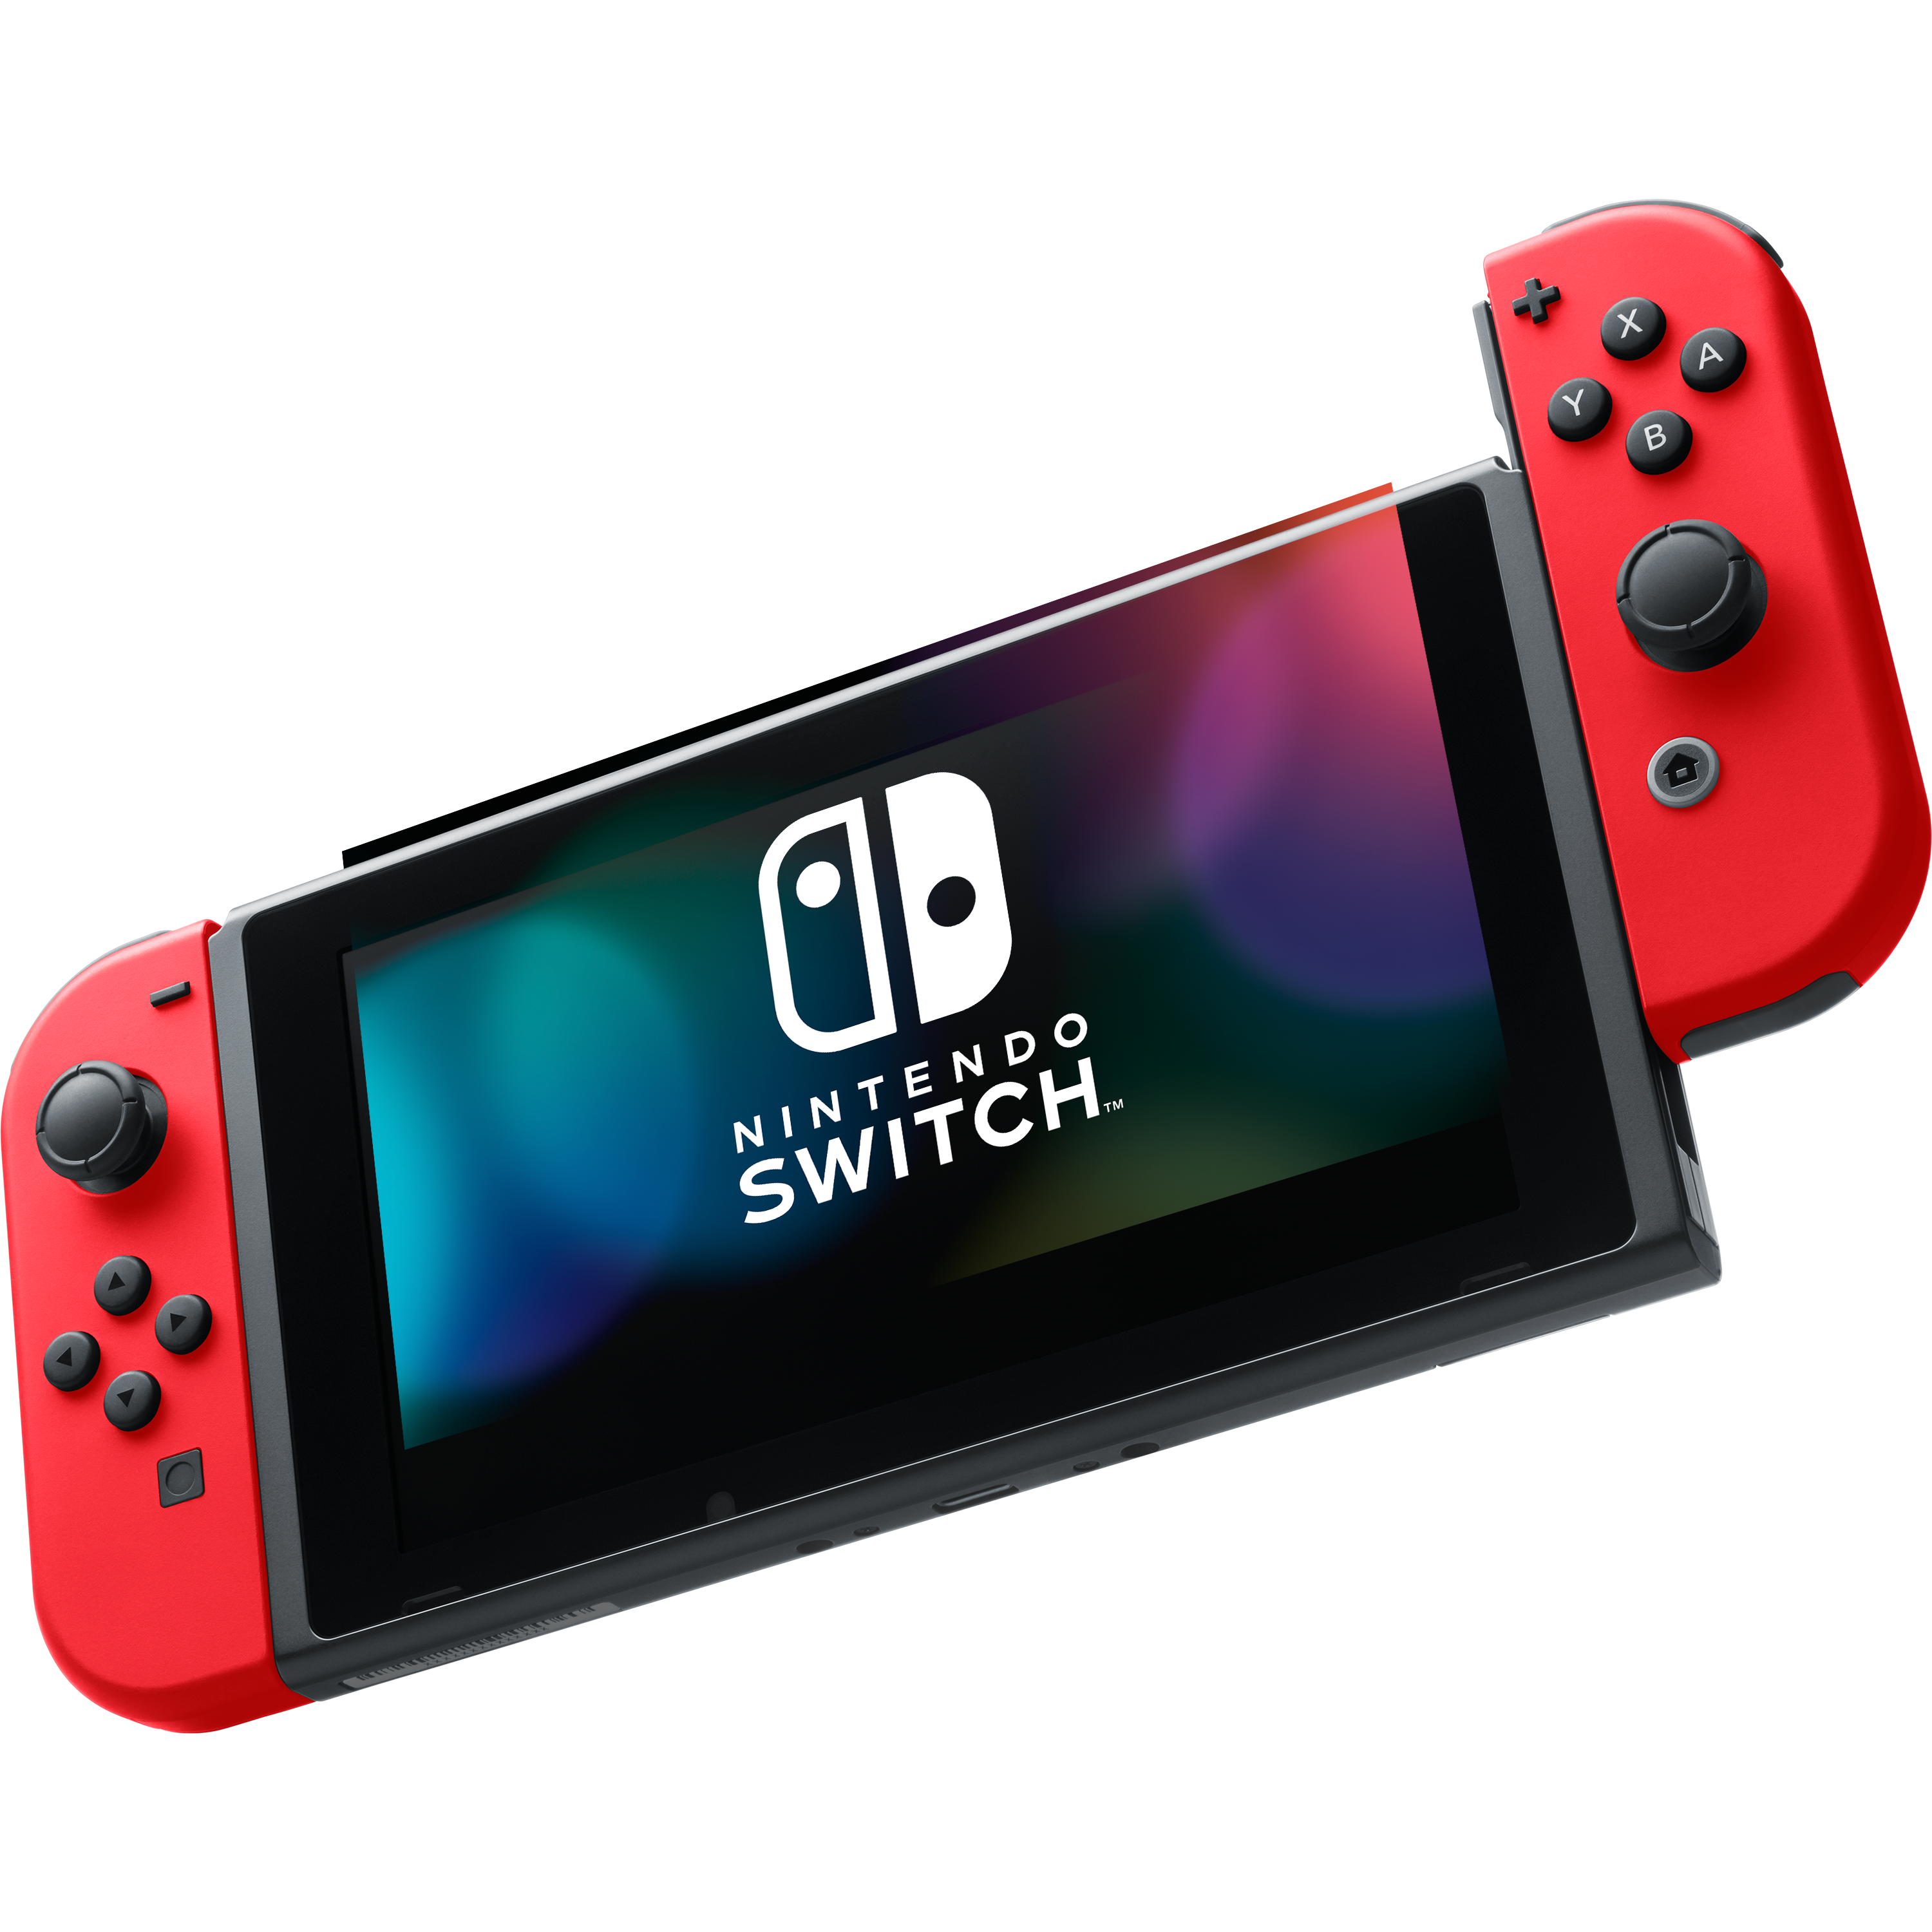 באנדל קונסולה Nintendo Switch V1.1 32GB כולל משחק Super Mario Odyssey - צבע שחור עם ג’וי-קון אדום שנתיים אחריות ע